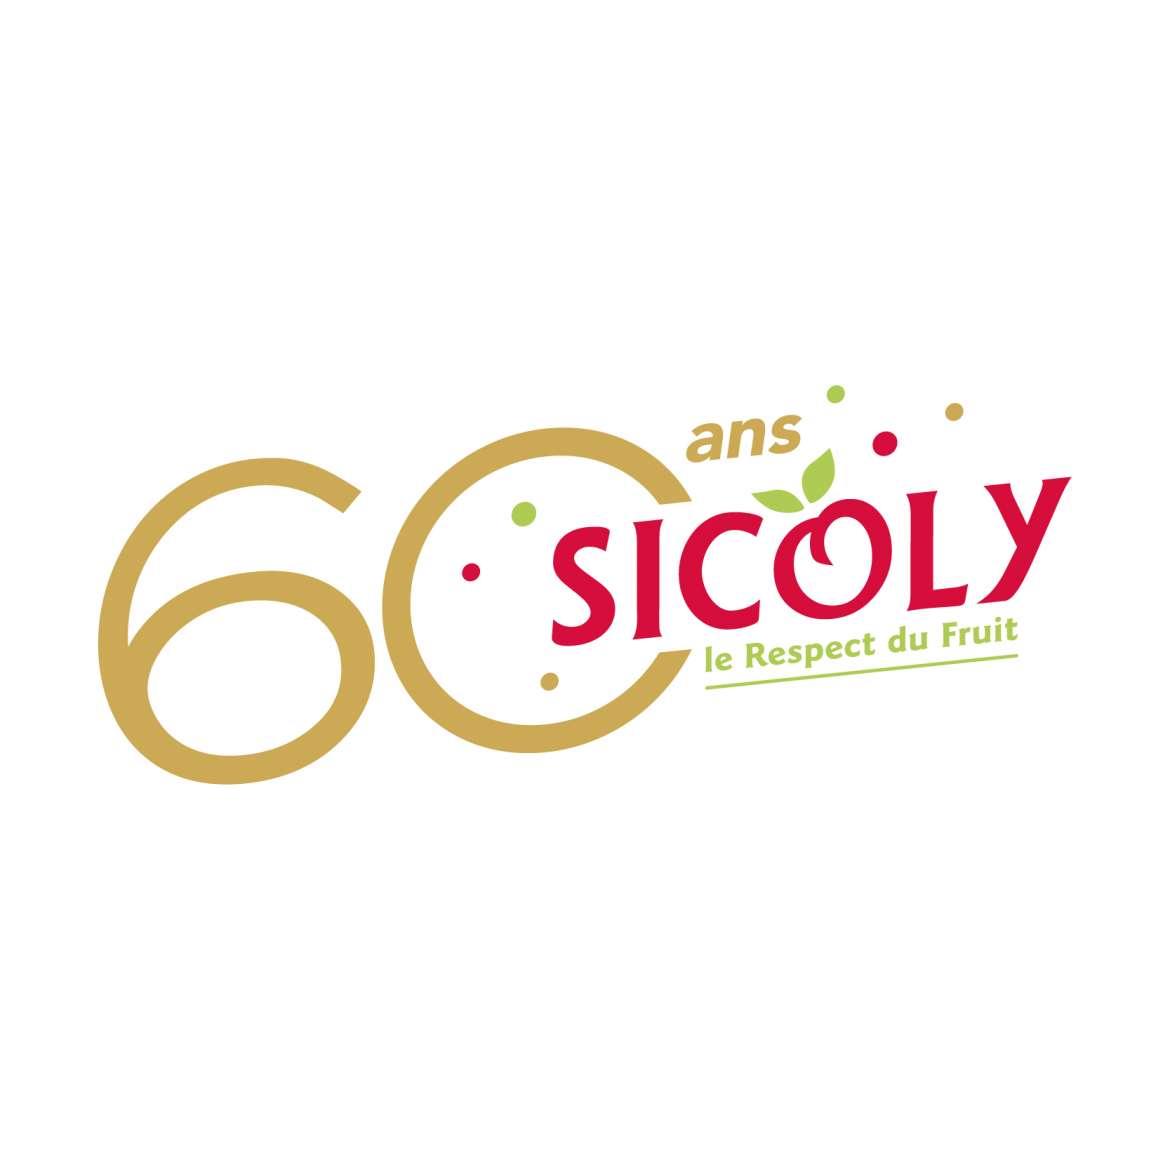 SICOLY fête ses 60 ans !